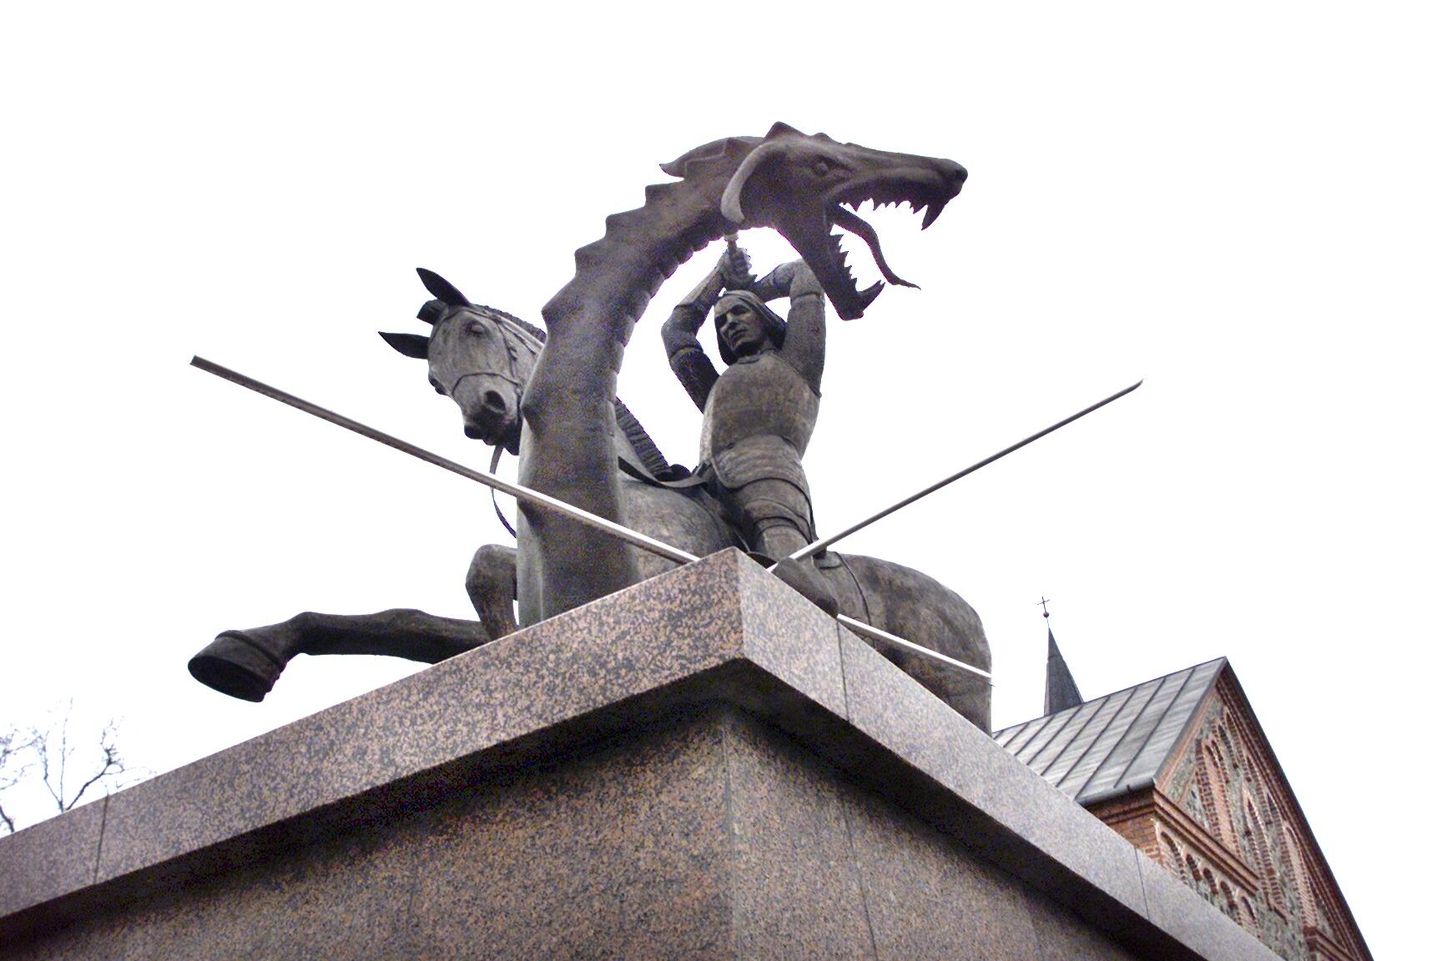 Vabadusõja võidu auks püstitatud monument ”Püha Jüri võitlus lohega”, mille juures toimub veteranipäeva ja jüripäeva tähistamise tseremoonia.